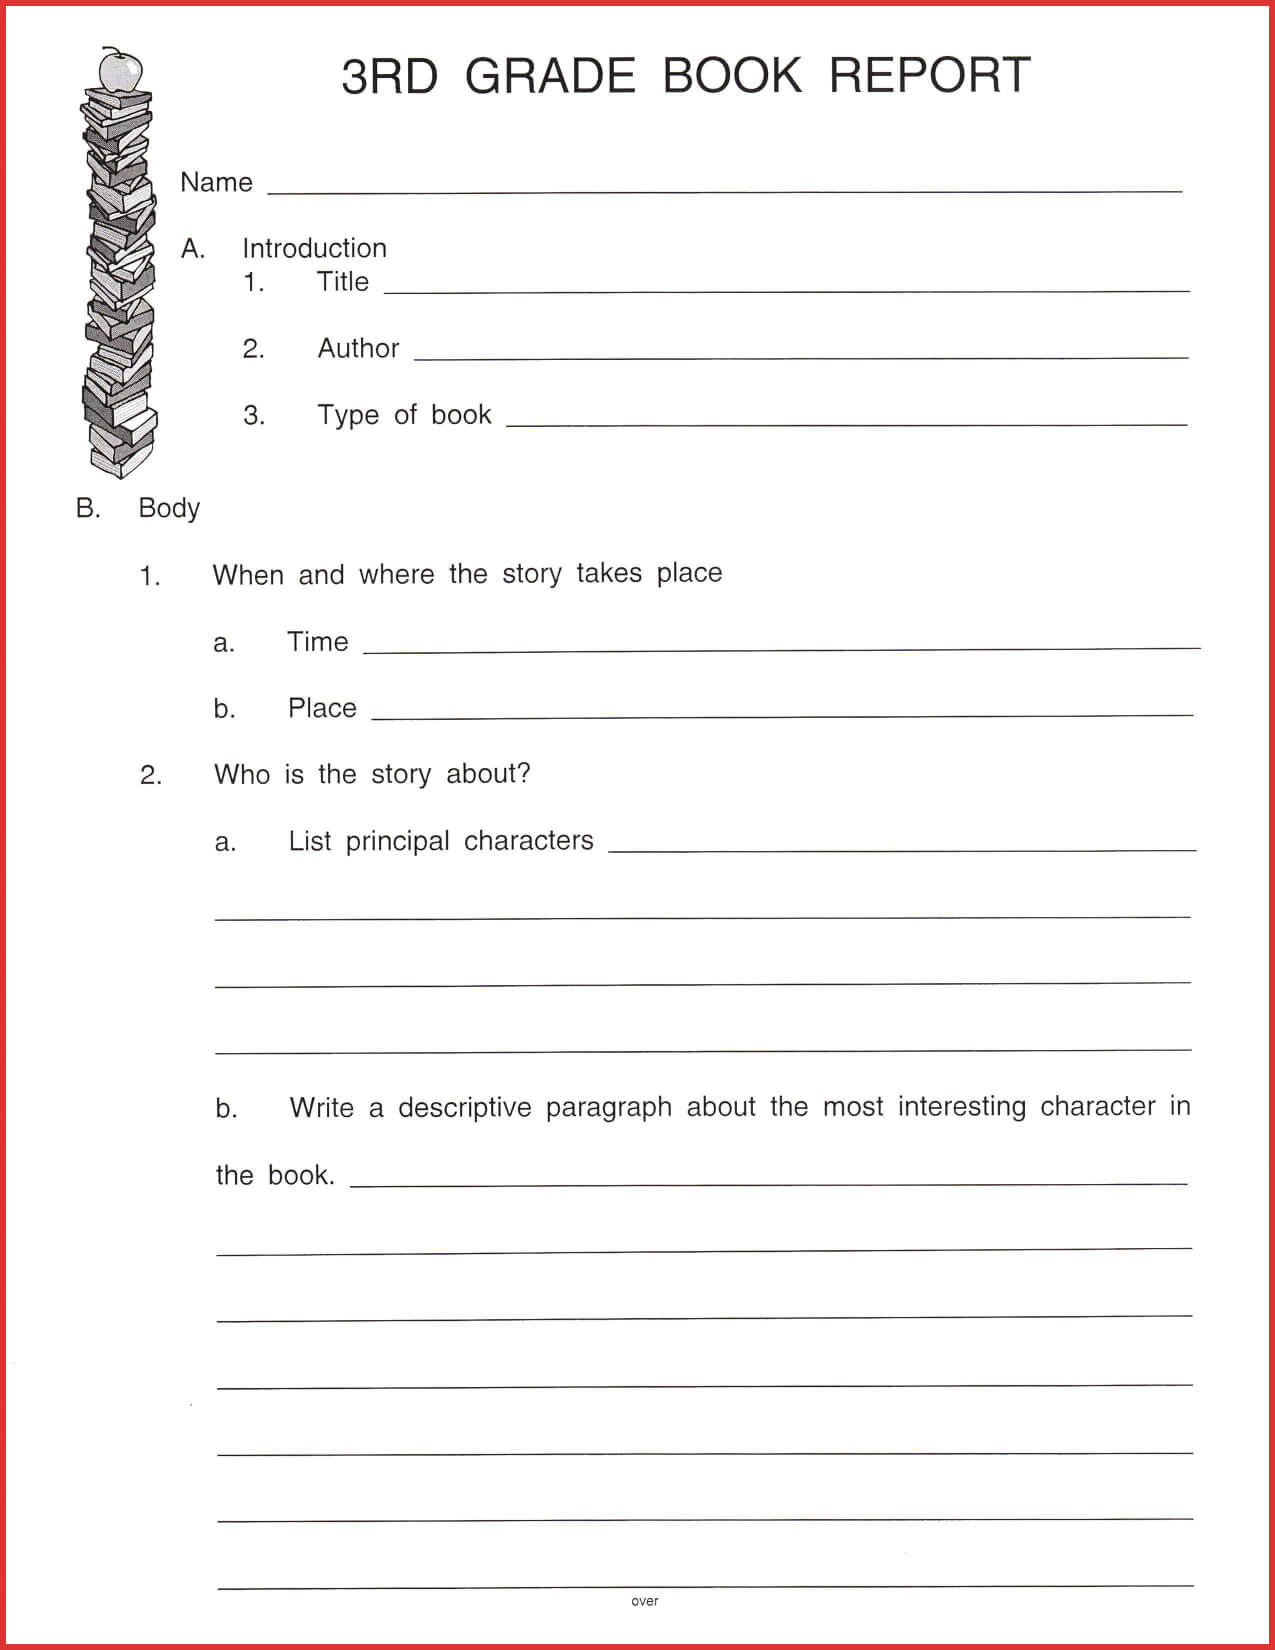 Fresh 3Rd Grade Book Report Template | Job Latter With 2Nd Grade Book Report Template